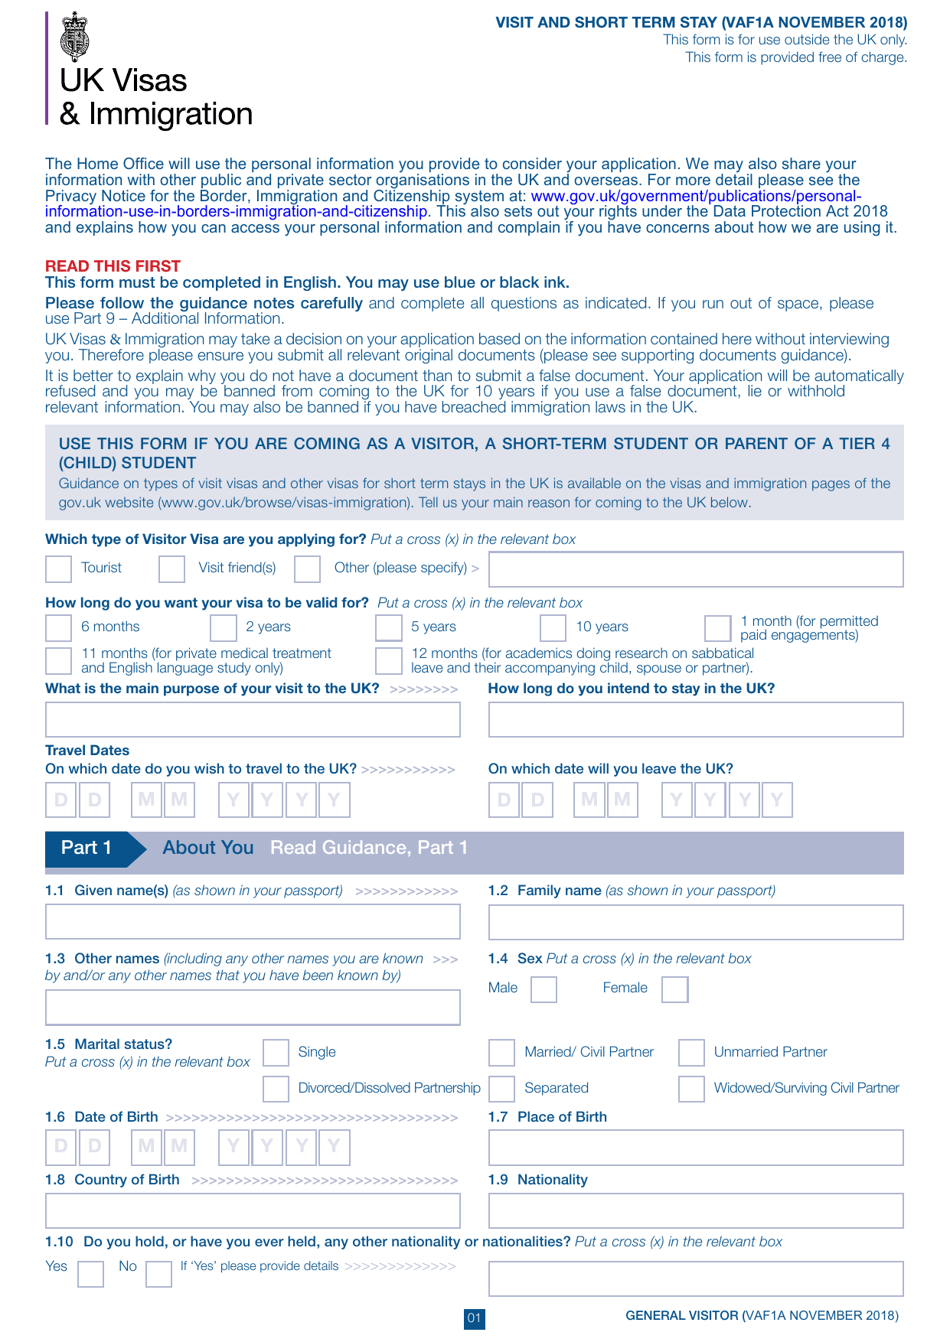 Form VAF1A Application for UK Visa to Visit or for Short-Term Stay - United Kingdom, Page 1